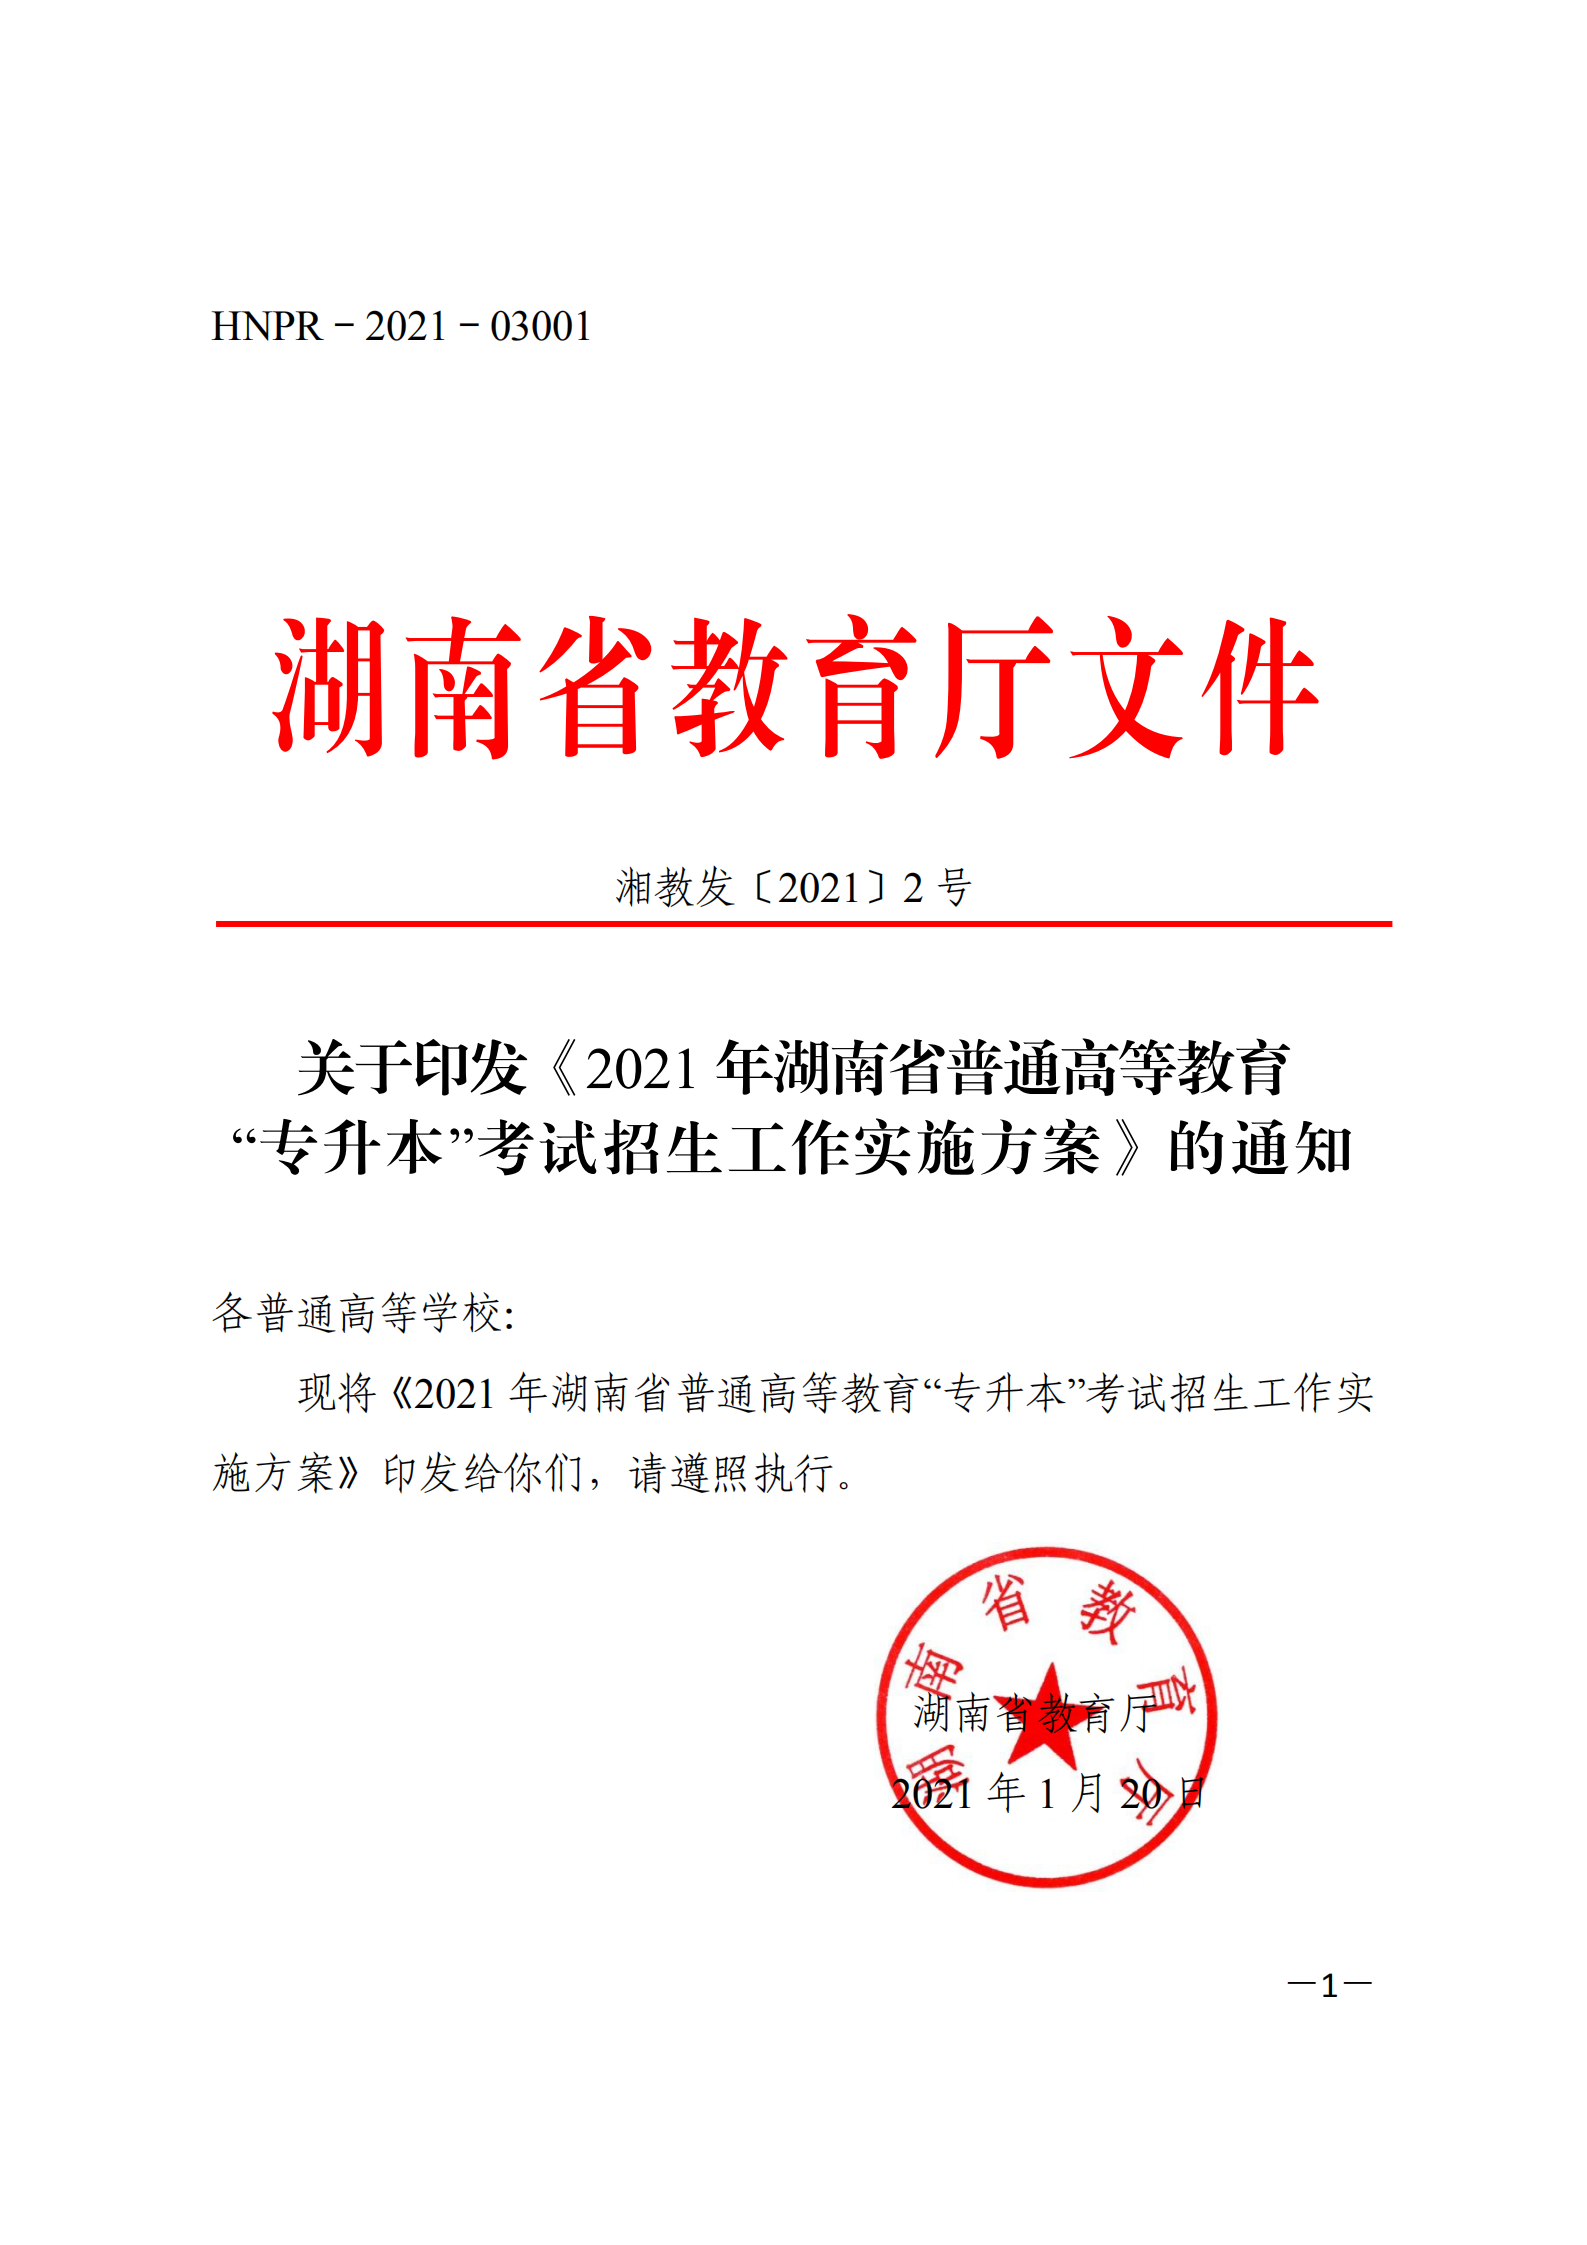 3_湘教发〔2021〕2号 关于印发《2021年湖南省普通高等教育“专升本”考试招生工作实施方案》的通知_00.png